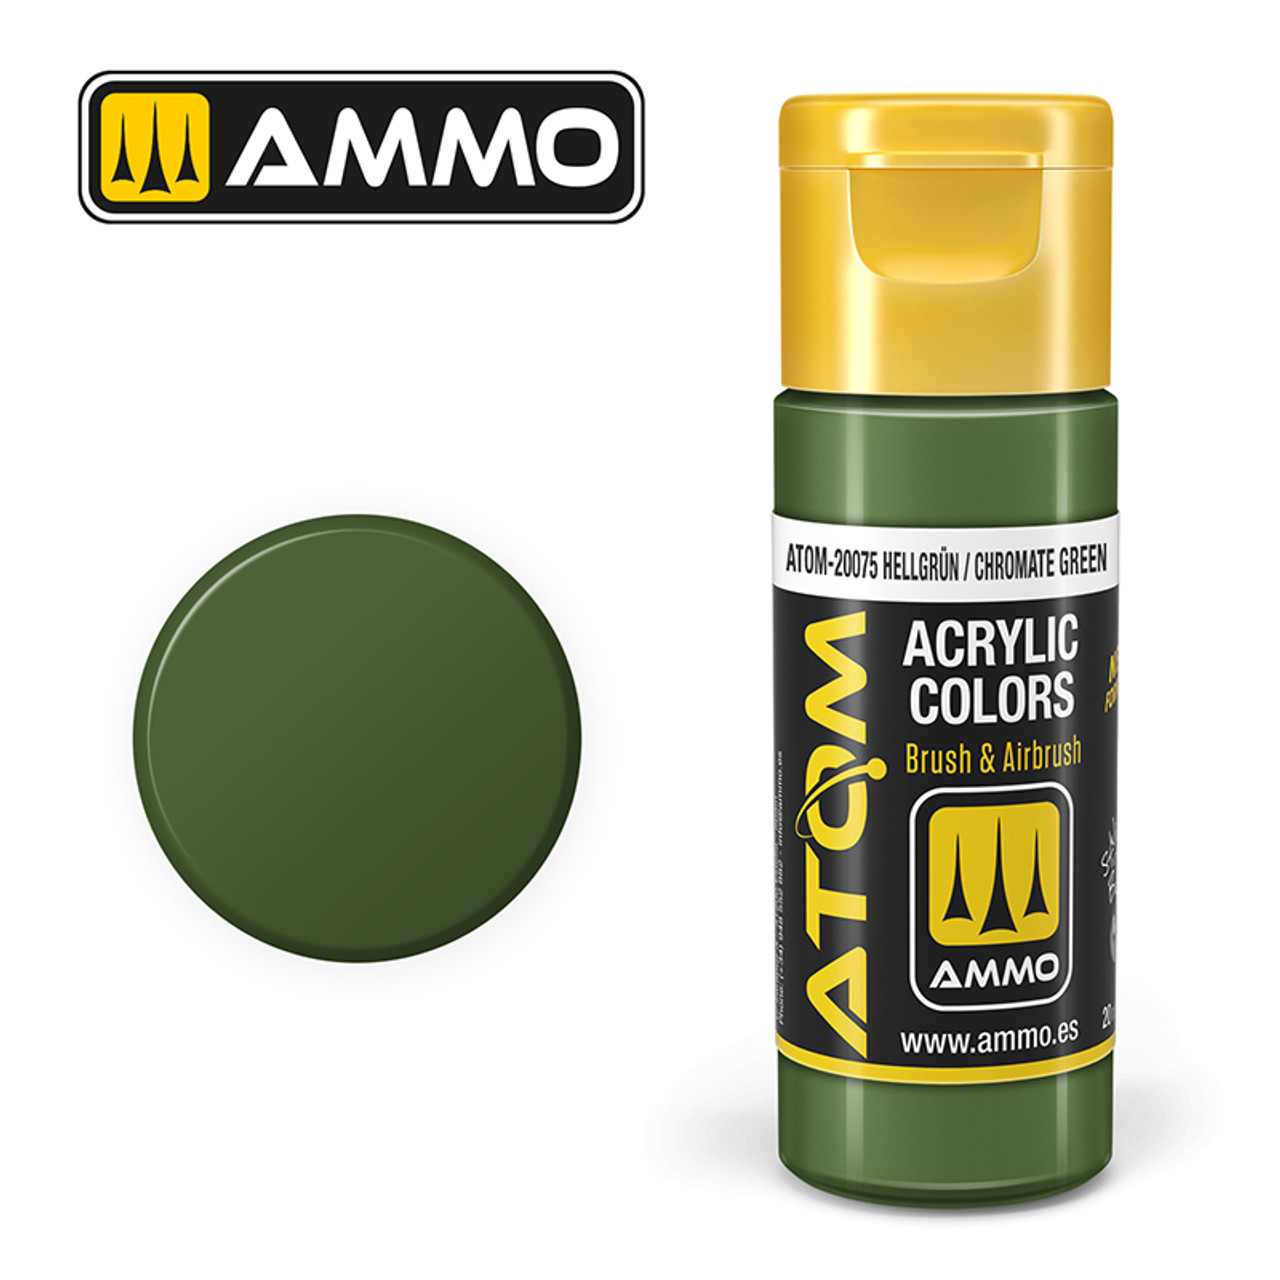 20075 ATOM Acrylic Paint - Hellgrün / Chromate Green FS34095 - RAL6020 - RLM82 (20ml)